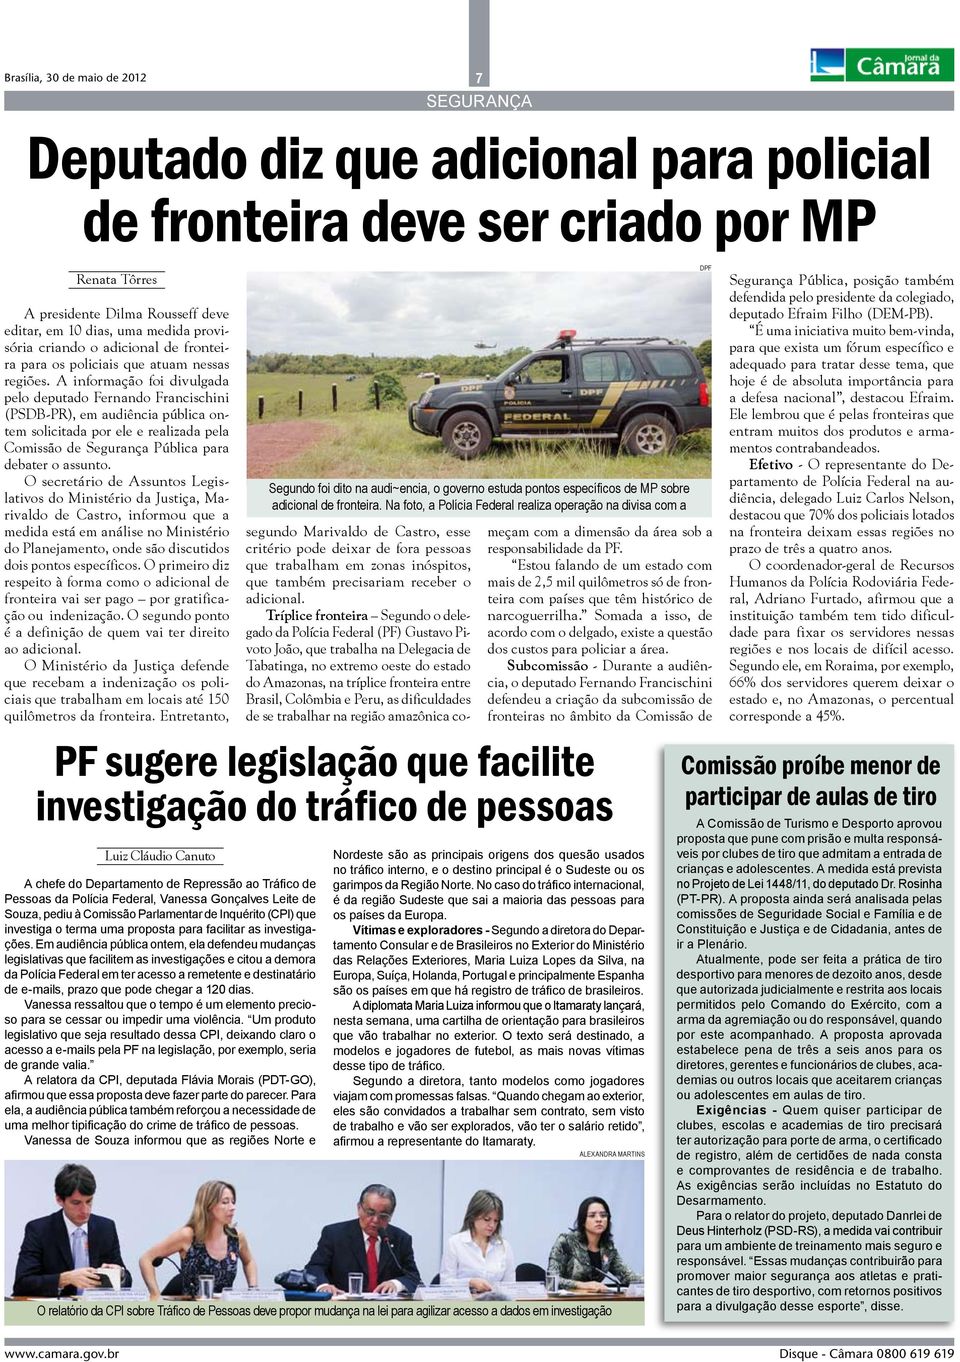 A informação foi divulgada pelo deputado Fernando Francischini (PSDB-PR), em audiência pública ontem solicitada por ele e realizada pela Comissão de Segurança Pública para debater o assunto.